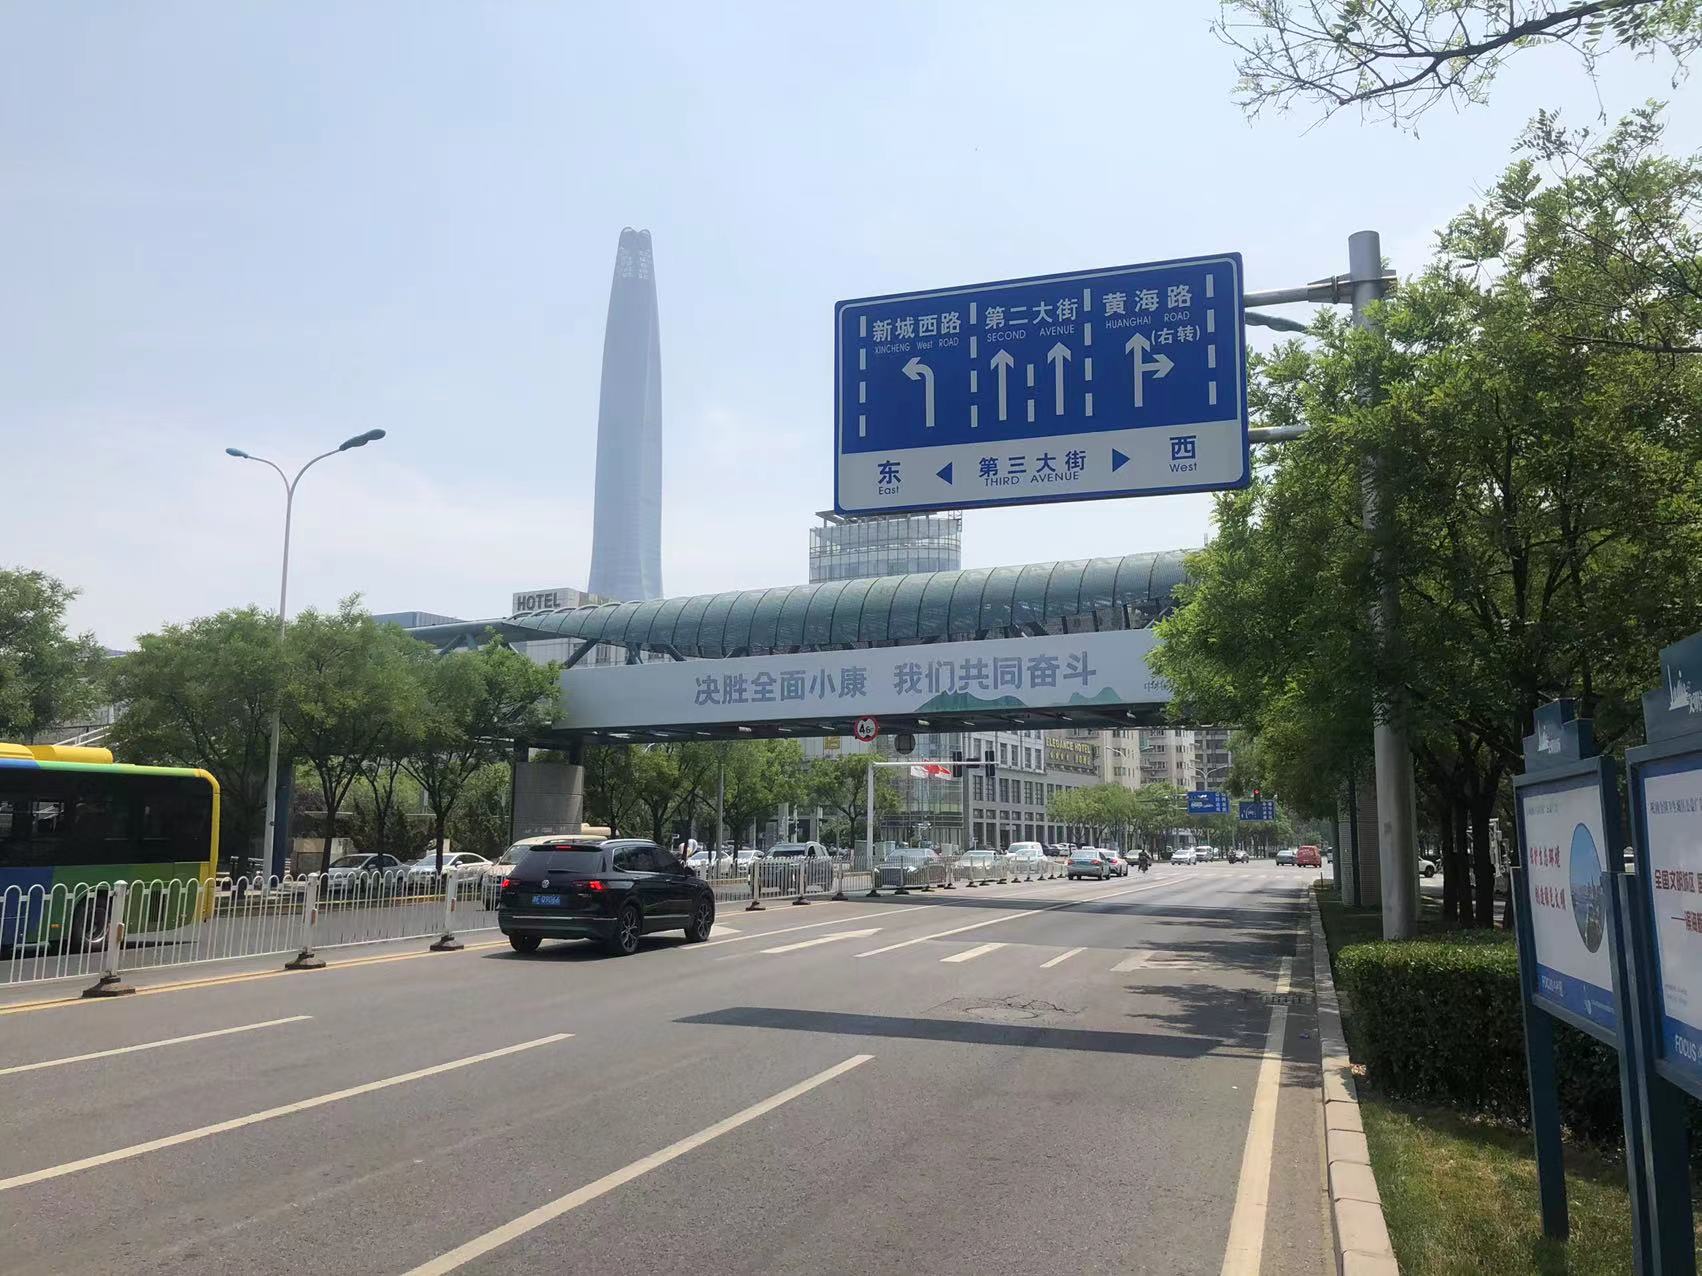 天津滨海新区南海路与第三大街交叉口北侧桥梁码头媒体喷绘/写真布